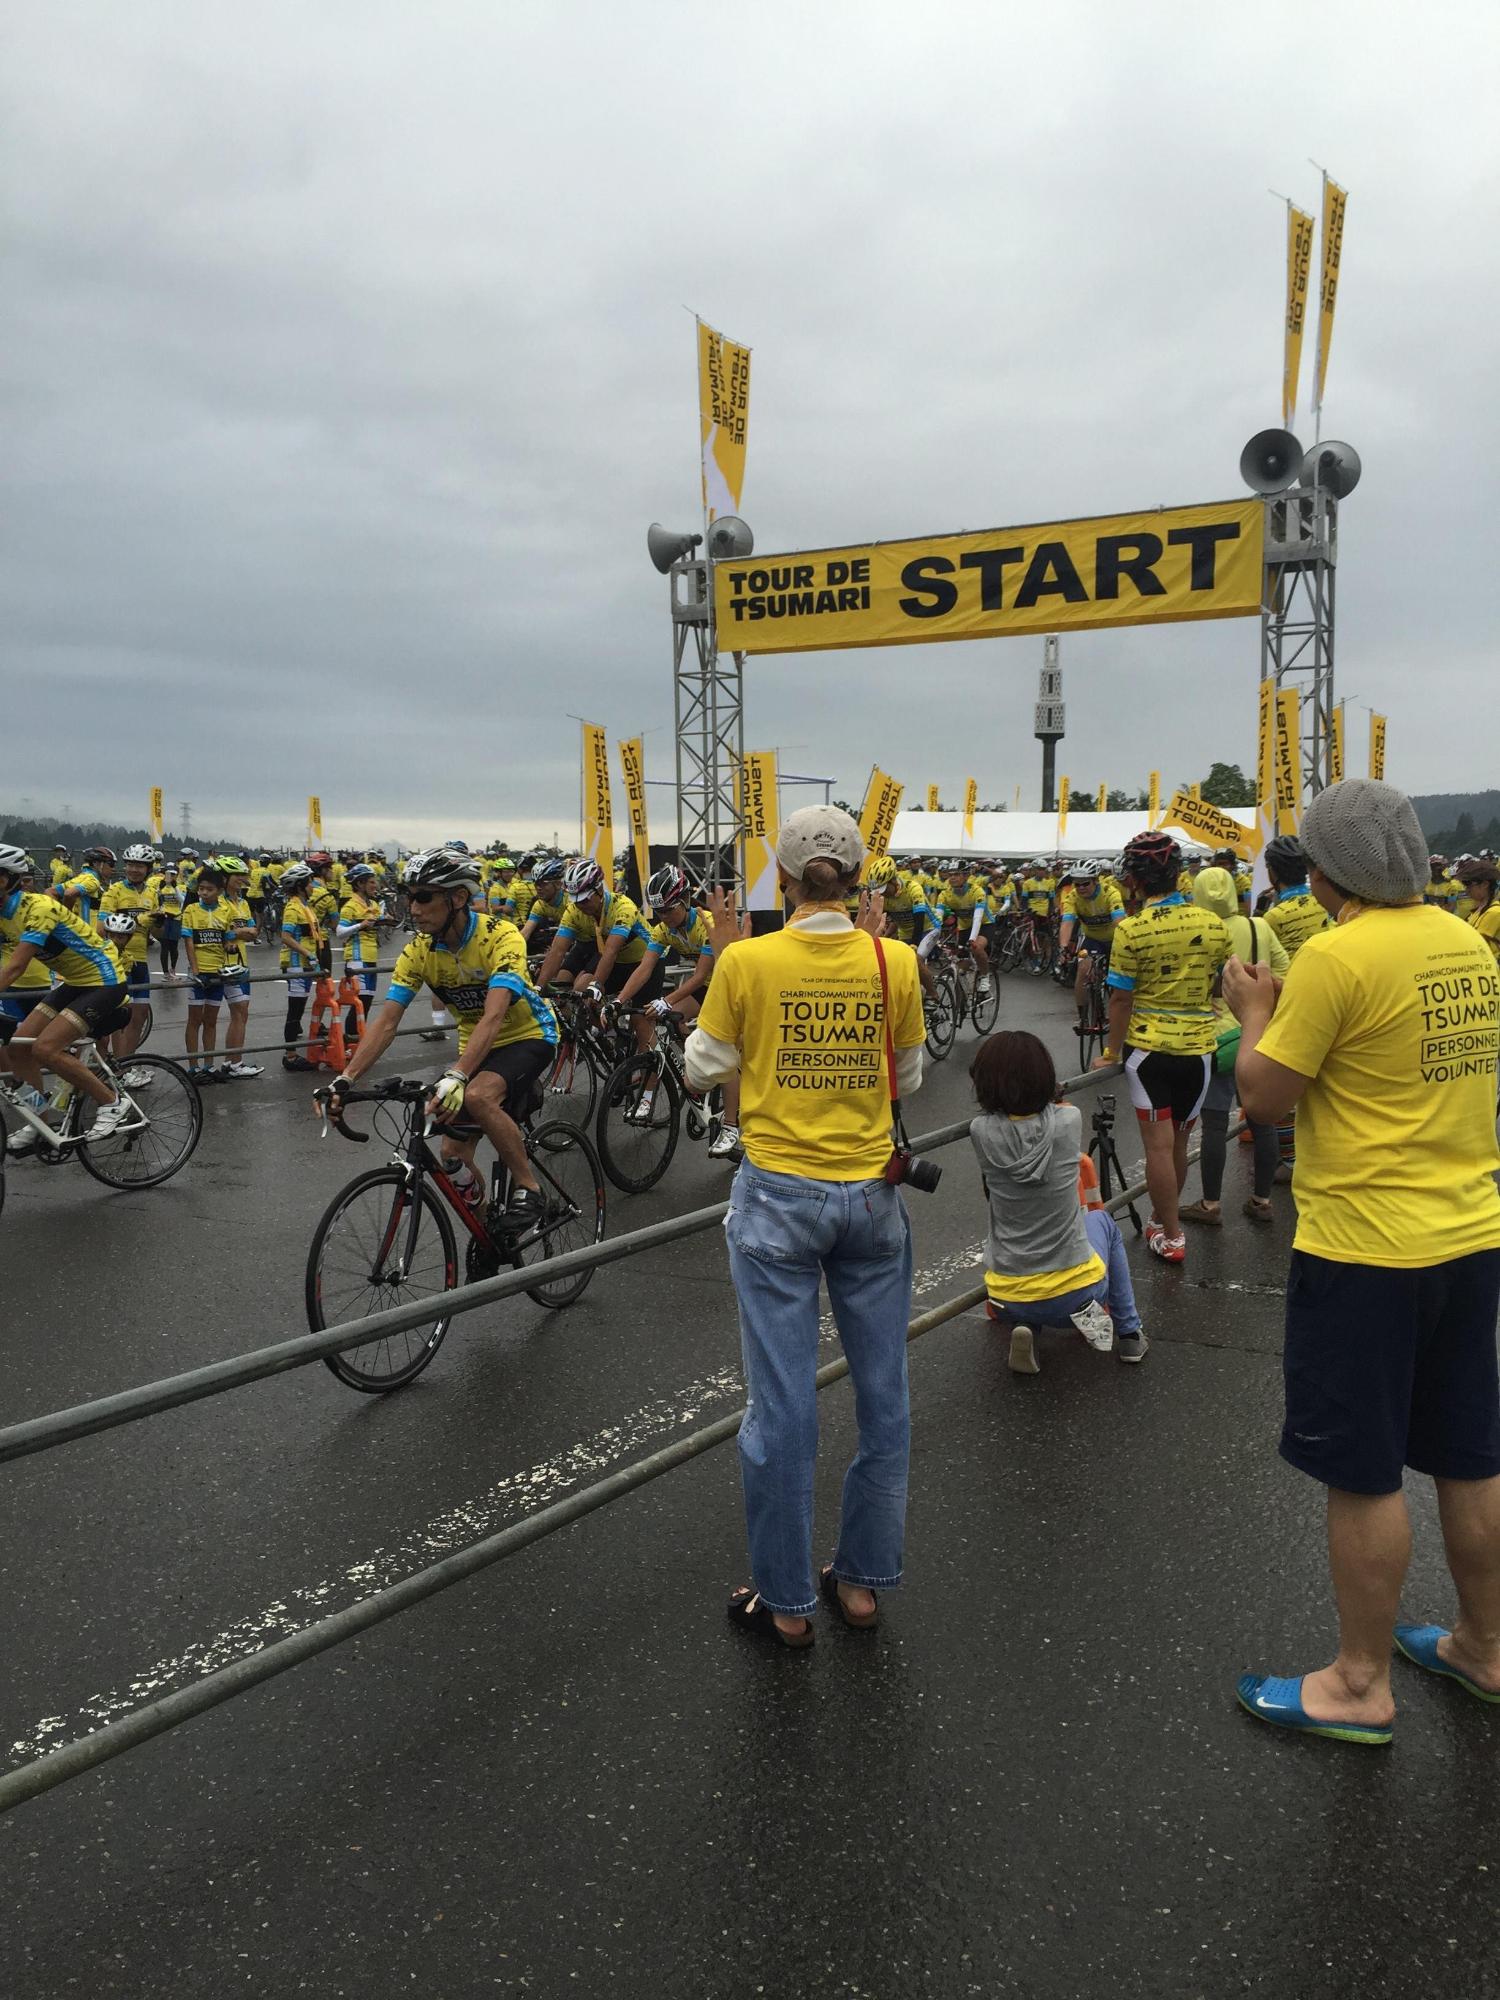 黄色い旗が掲げられたスタートのゲートから、自転車競技の参加者達が一斉に走り出してくる様子の写真